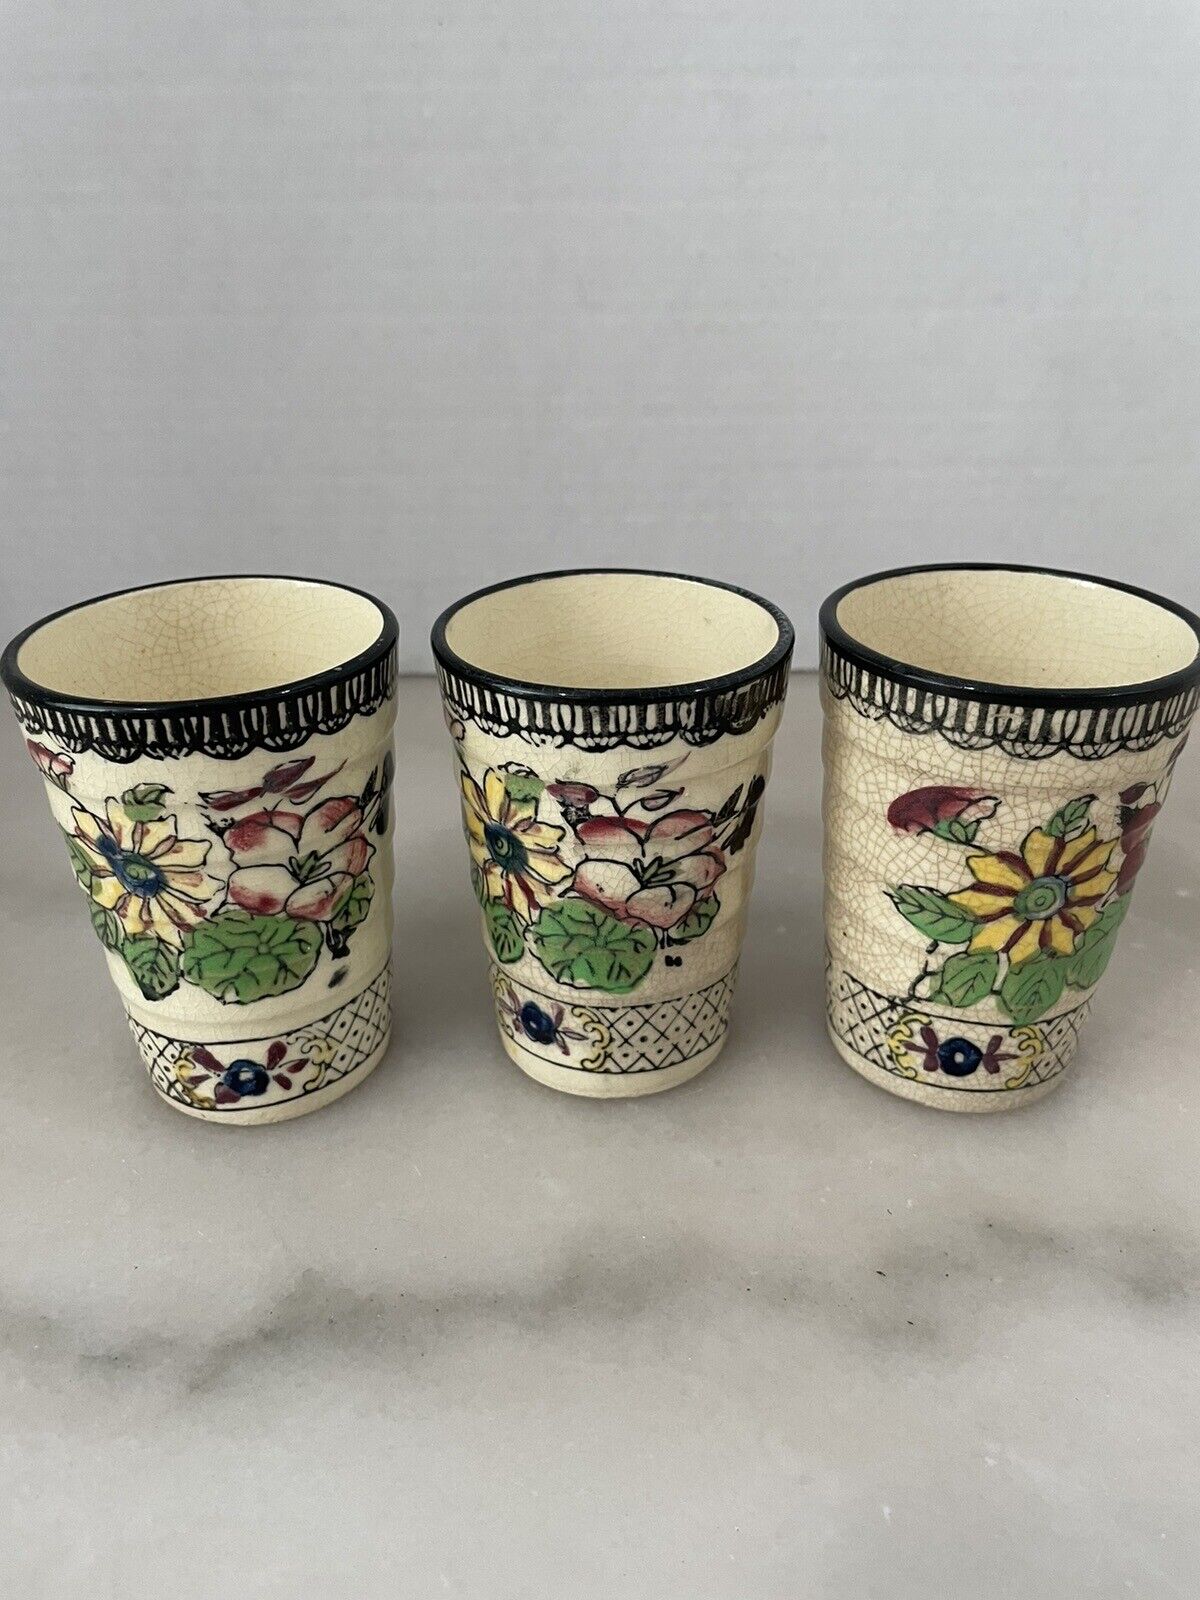 3 Vintage Japenese Sake Tea Cups 4”